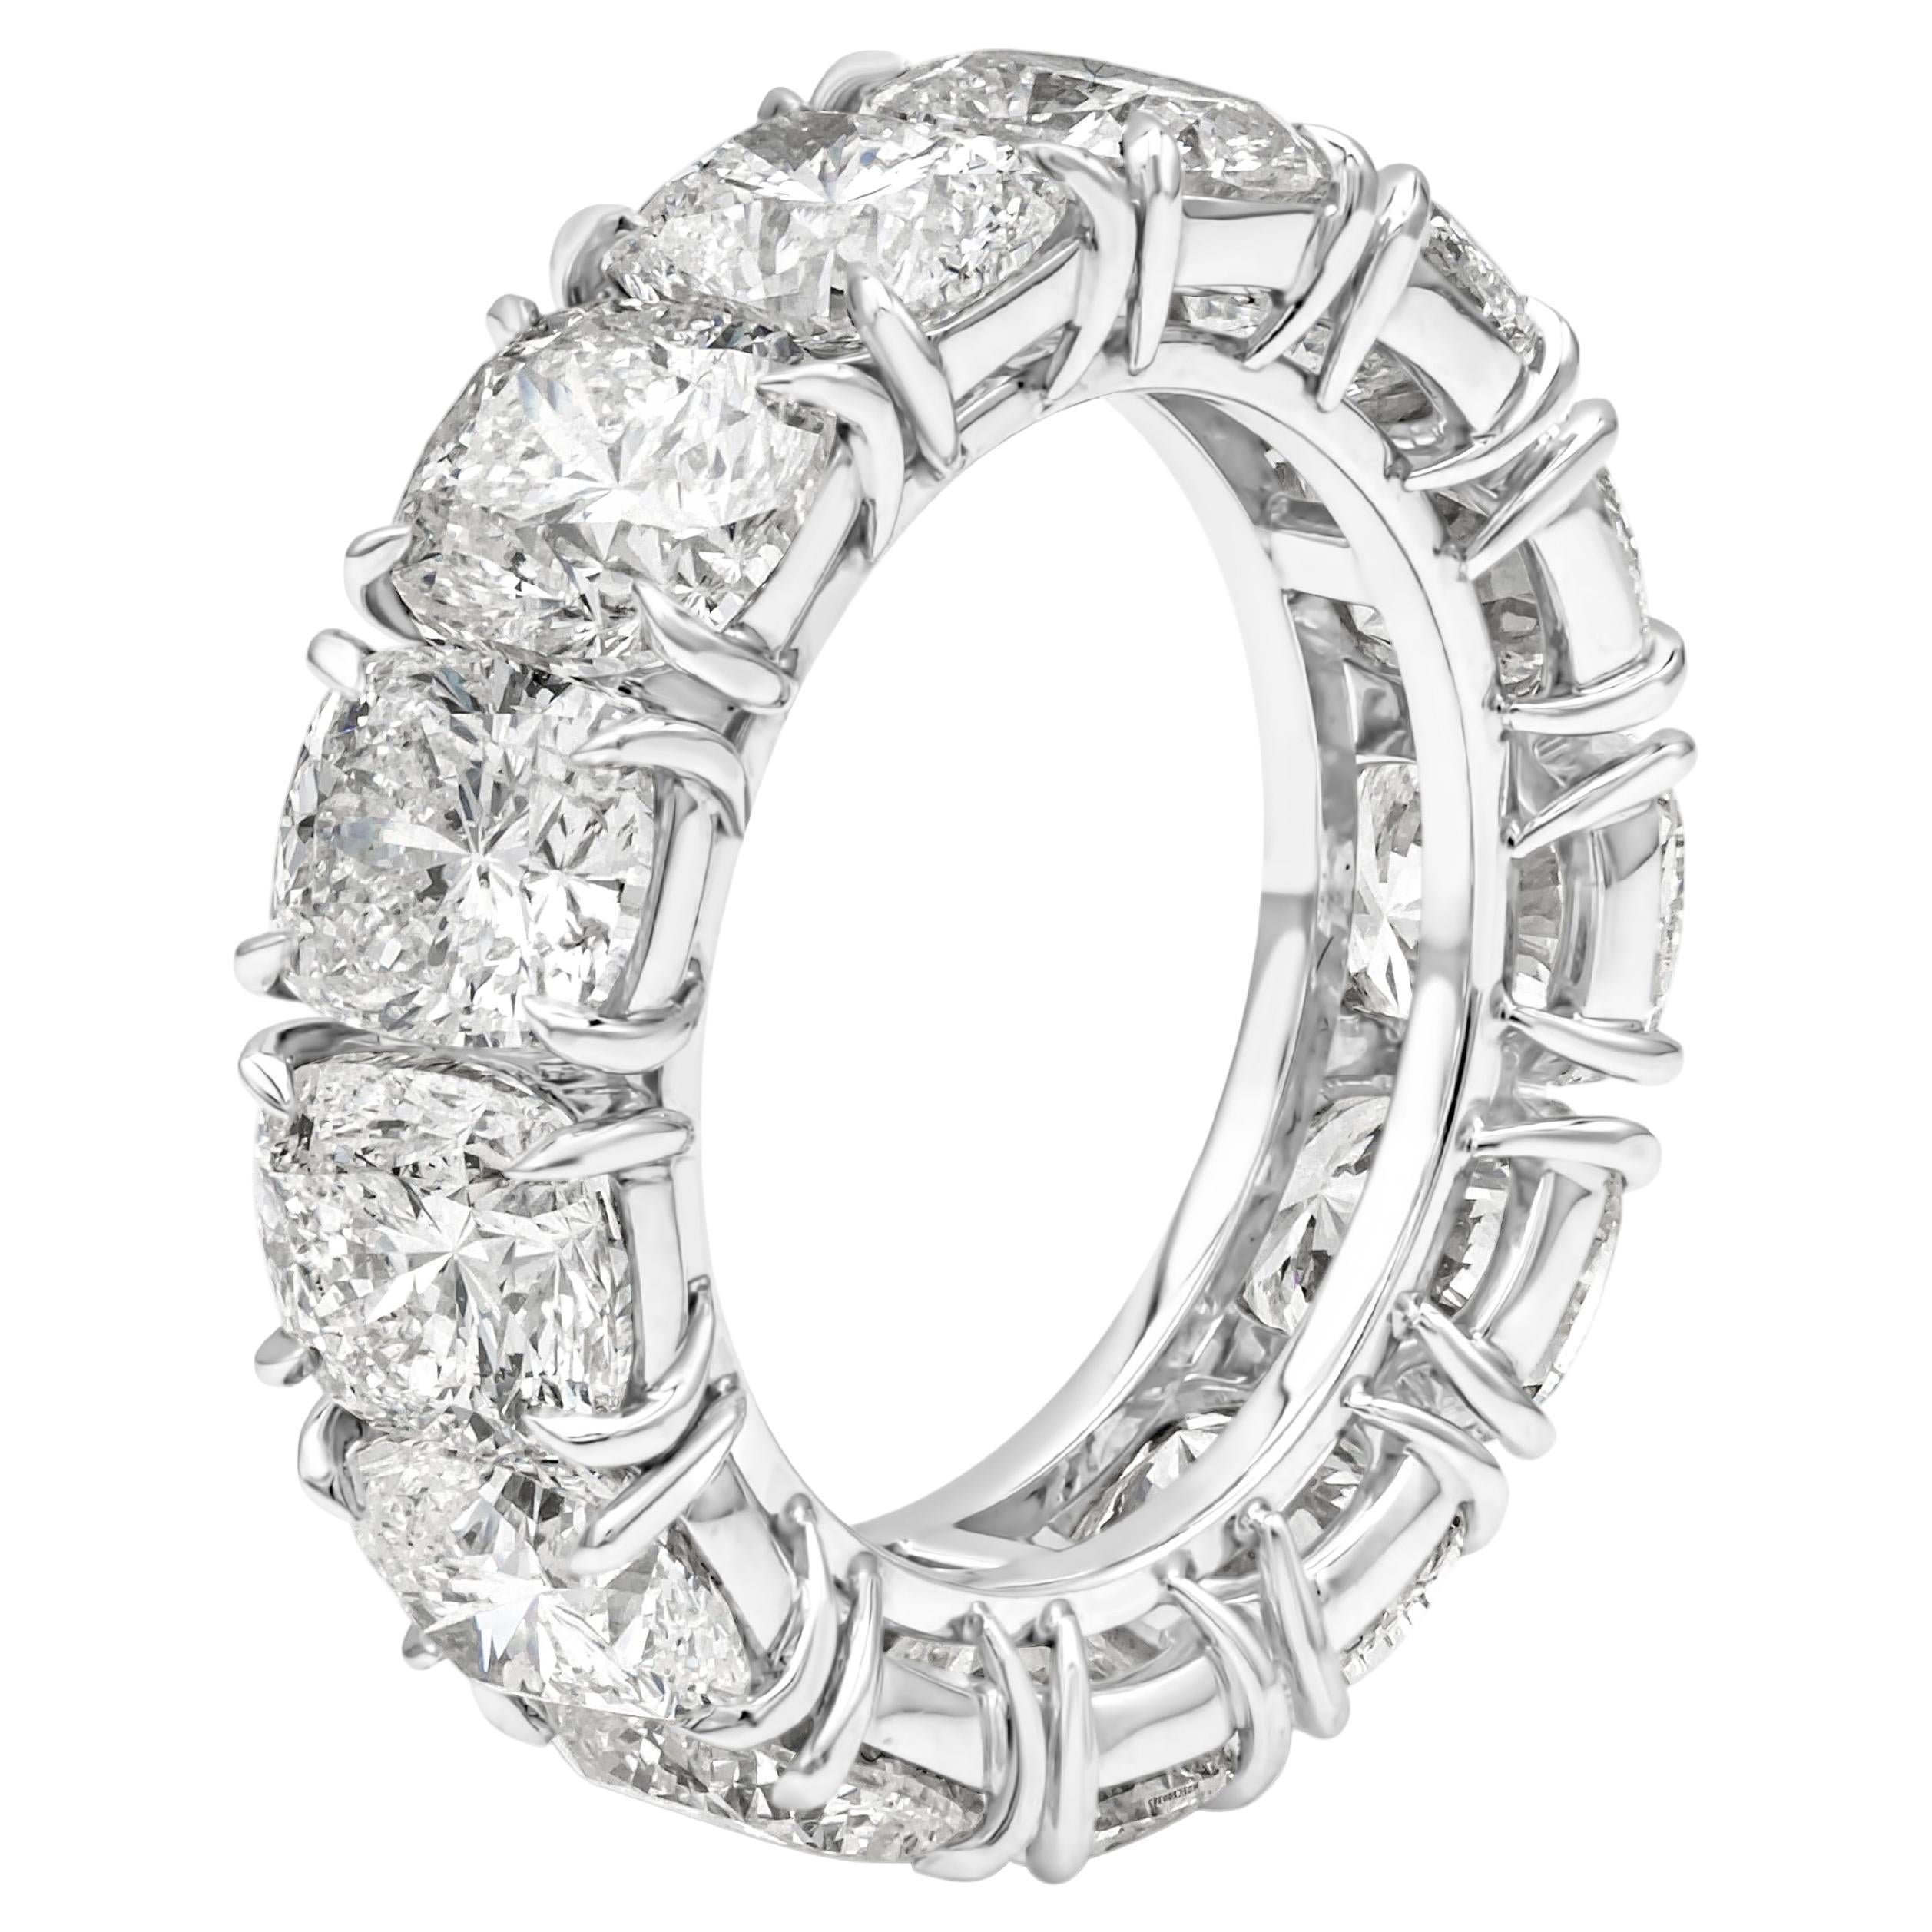 Roman Malakov, alliance d'éternité en diamants taille coussin de 13,47 carats au total